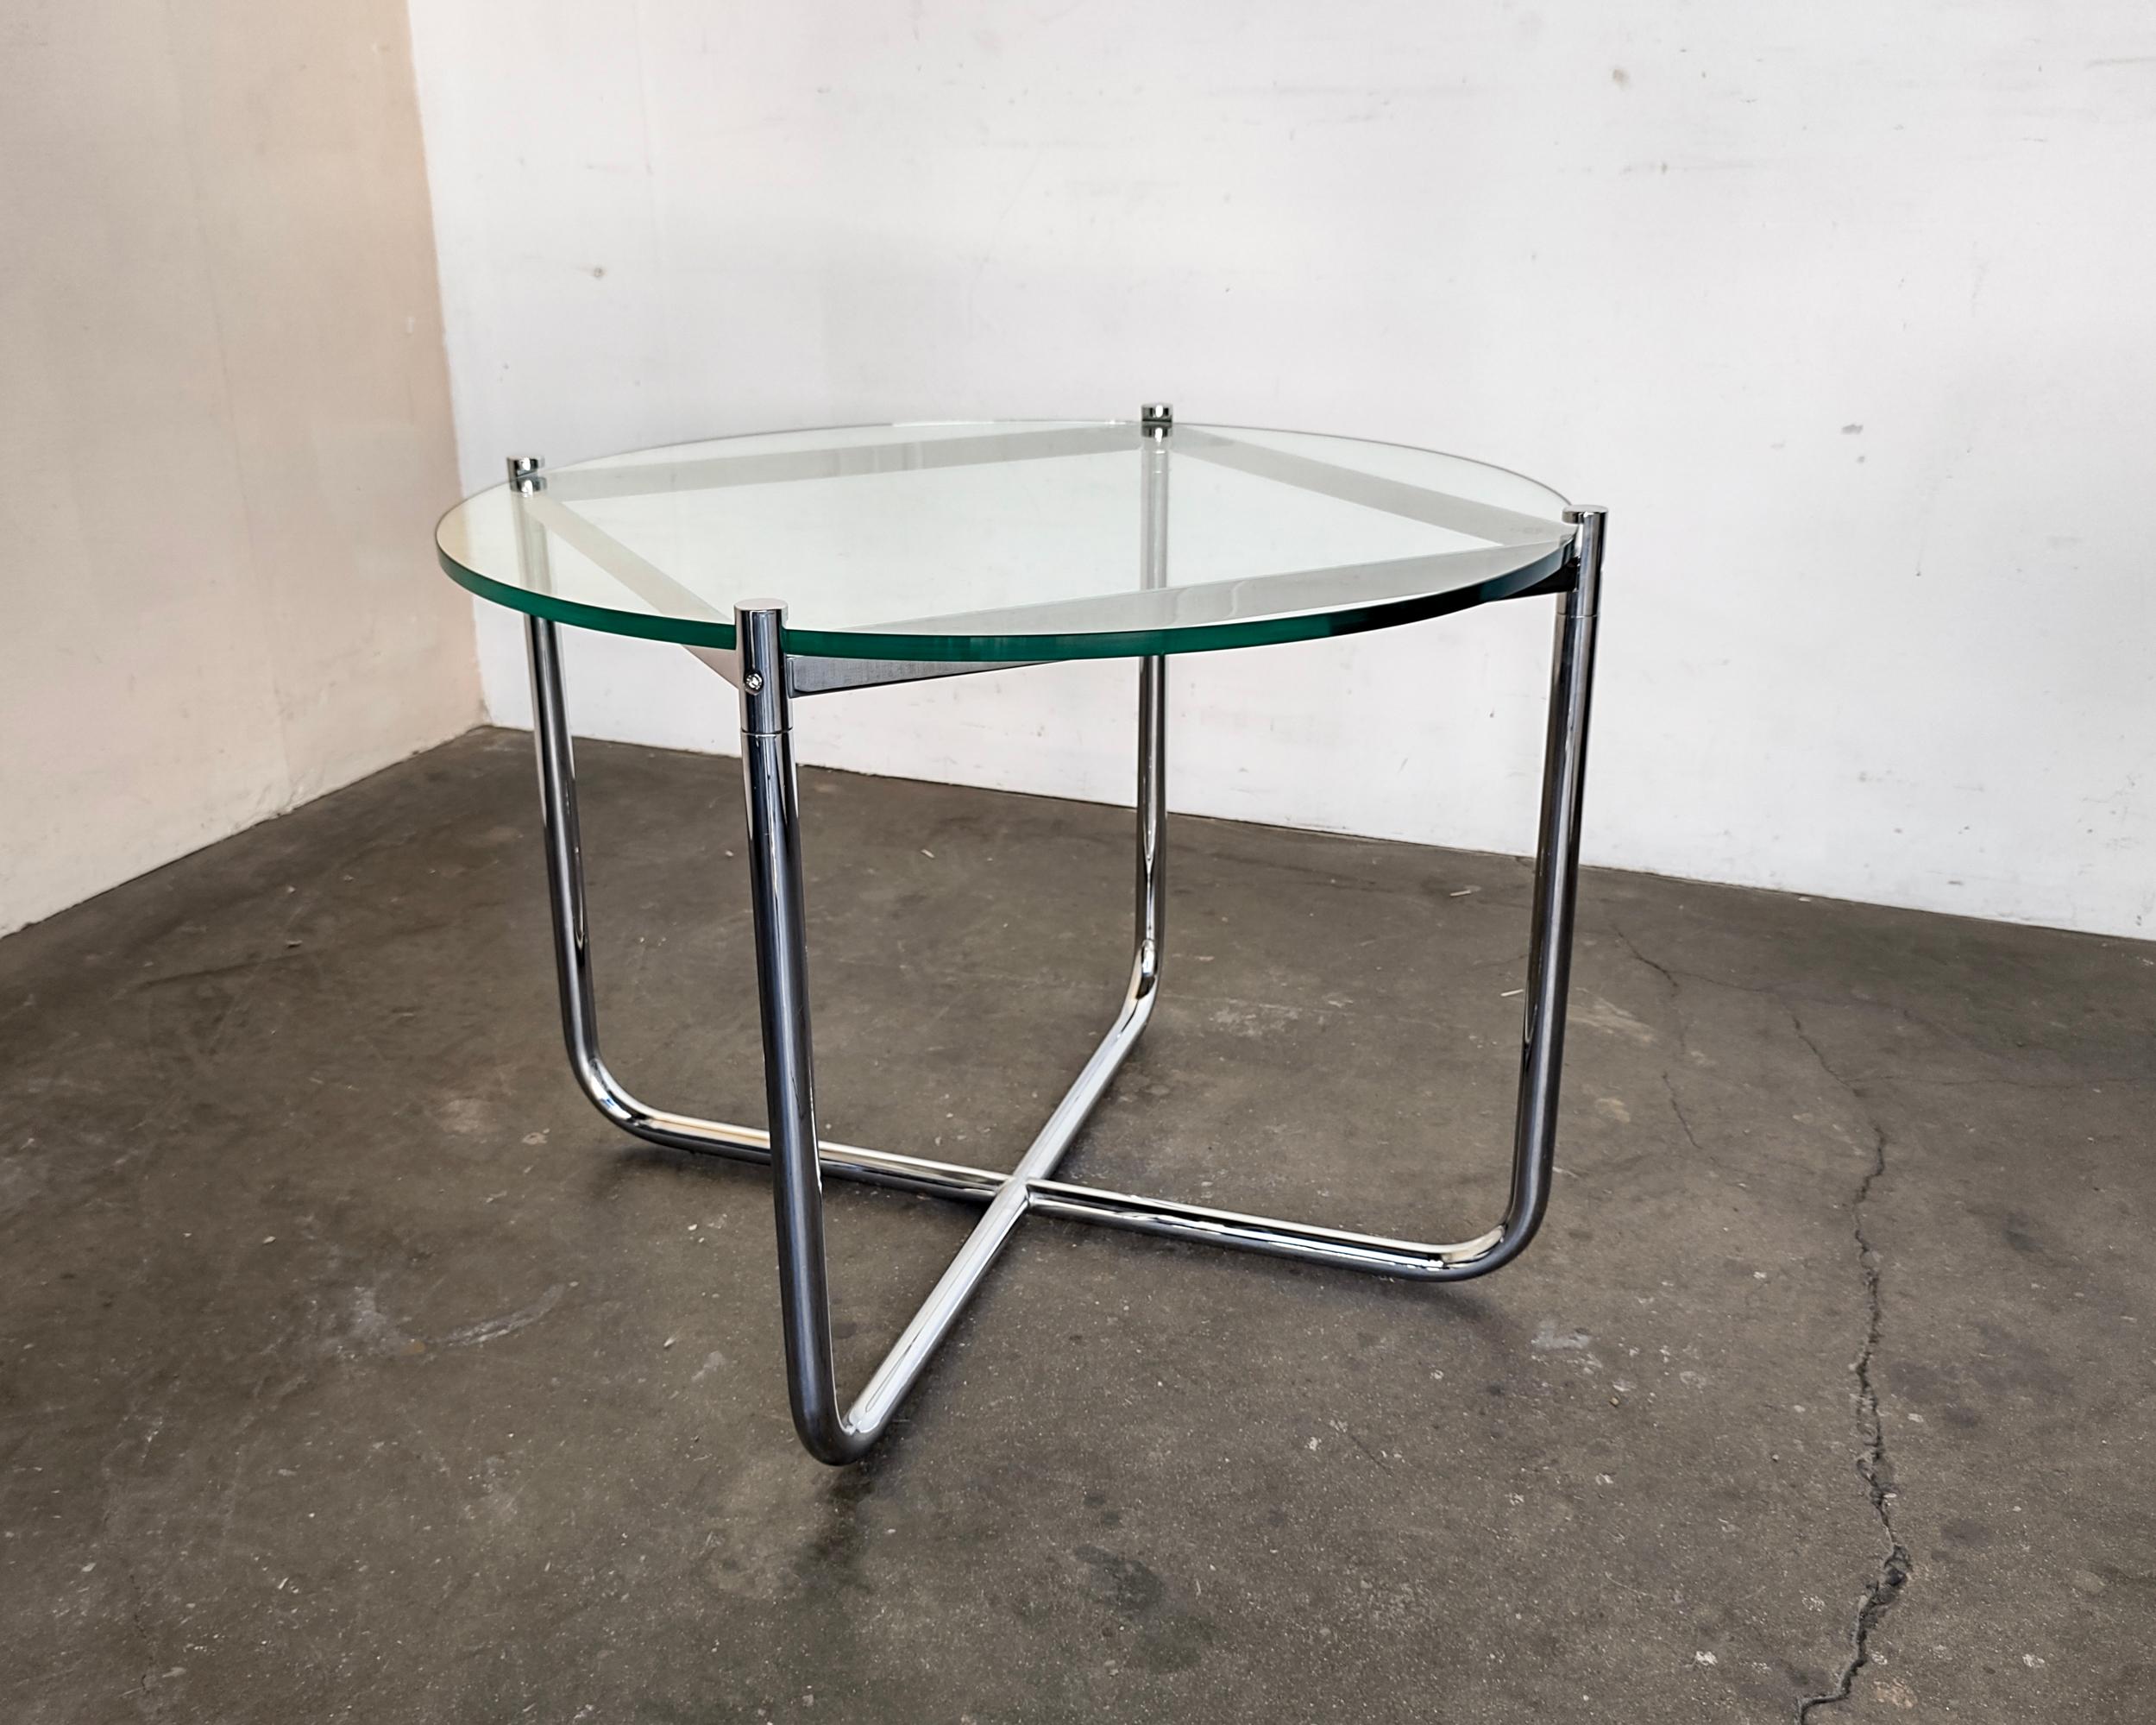 La table MR conçue par Mies Van Der Rohe présente son emblématique structure tubulaire courbée en chrome combinée à un plateau en verre épais. Conçu à l'origine pour la maison Tugendhat en 1927. Cet exemple a été produit par Knoll dans les années